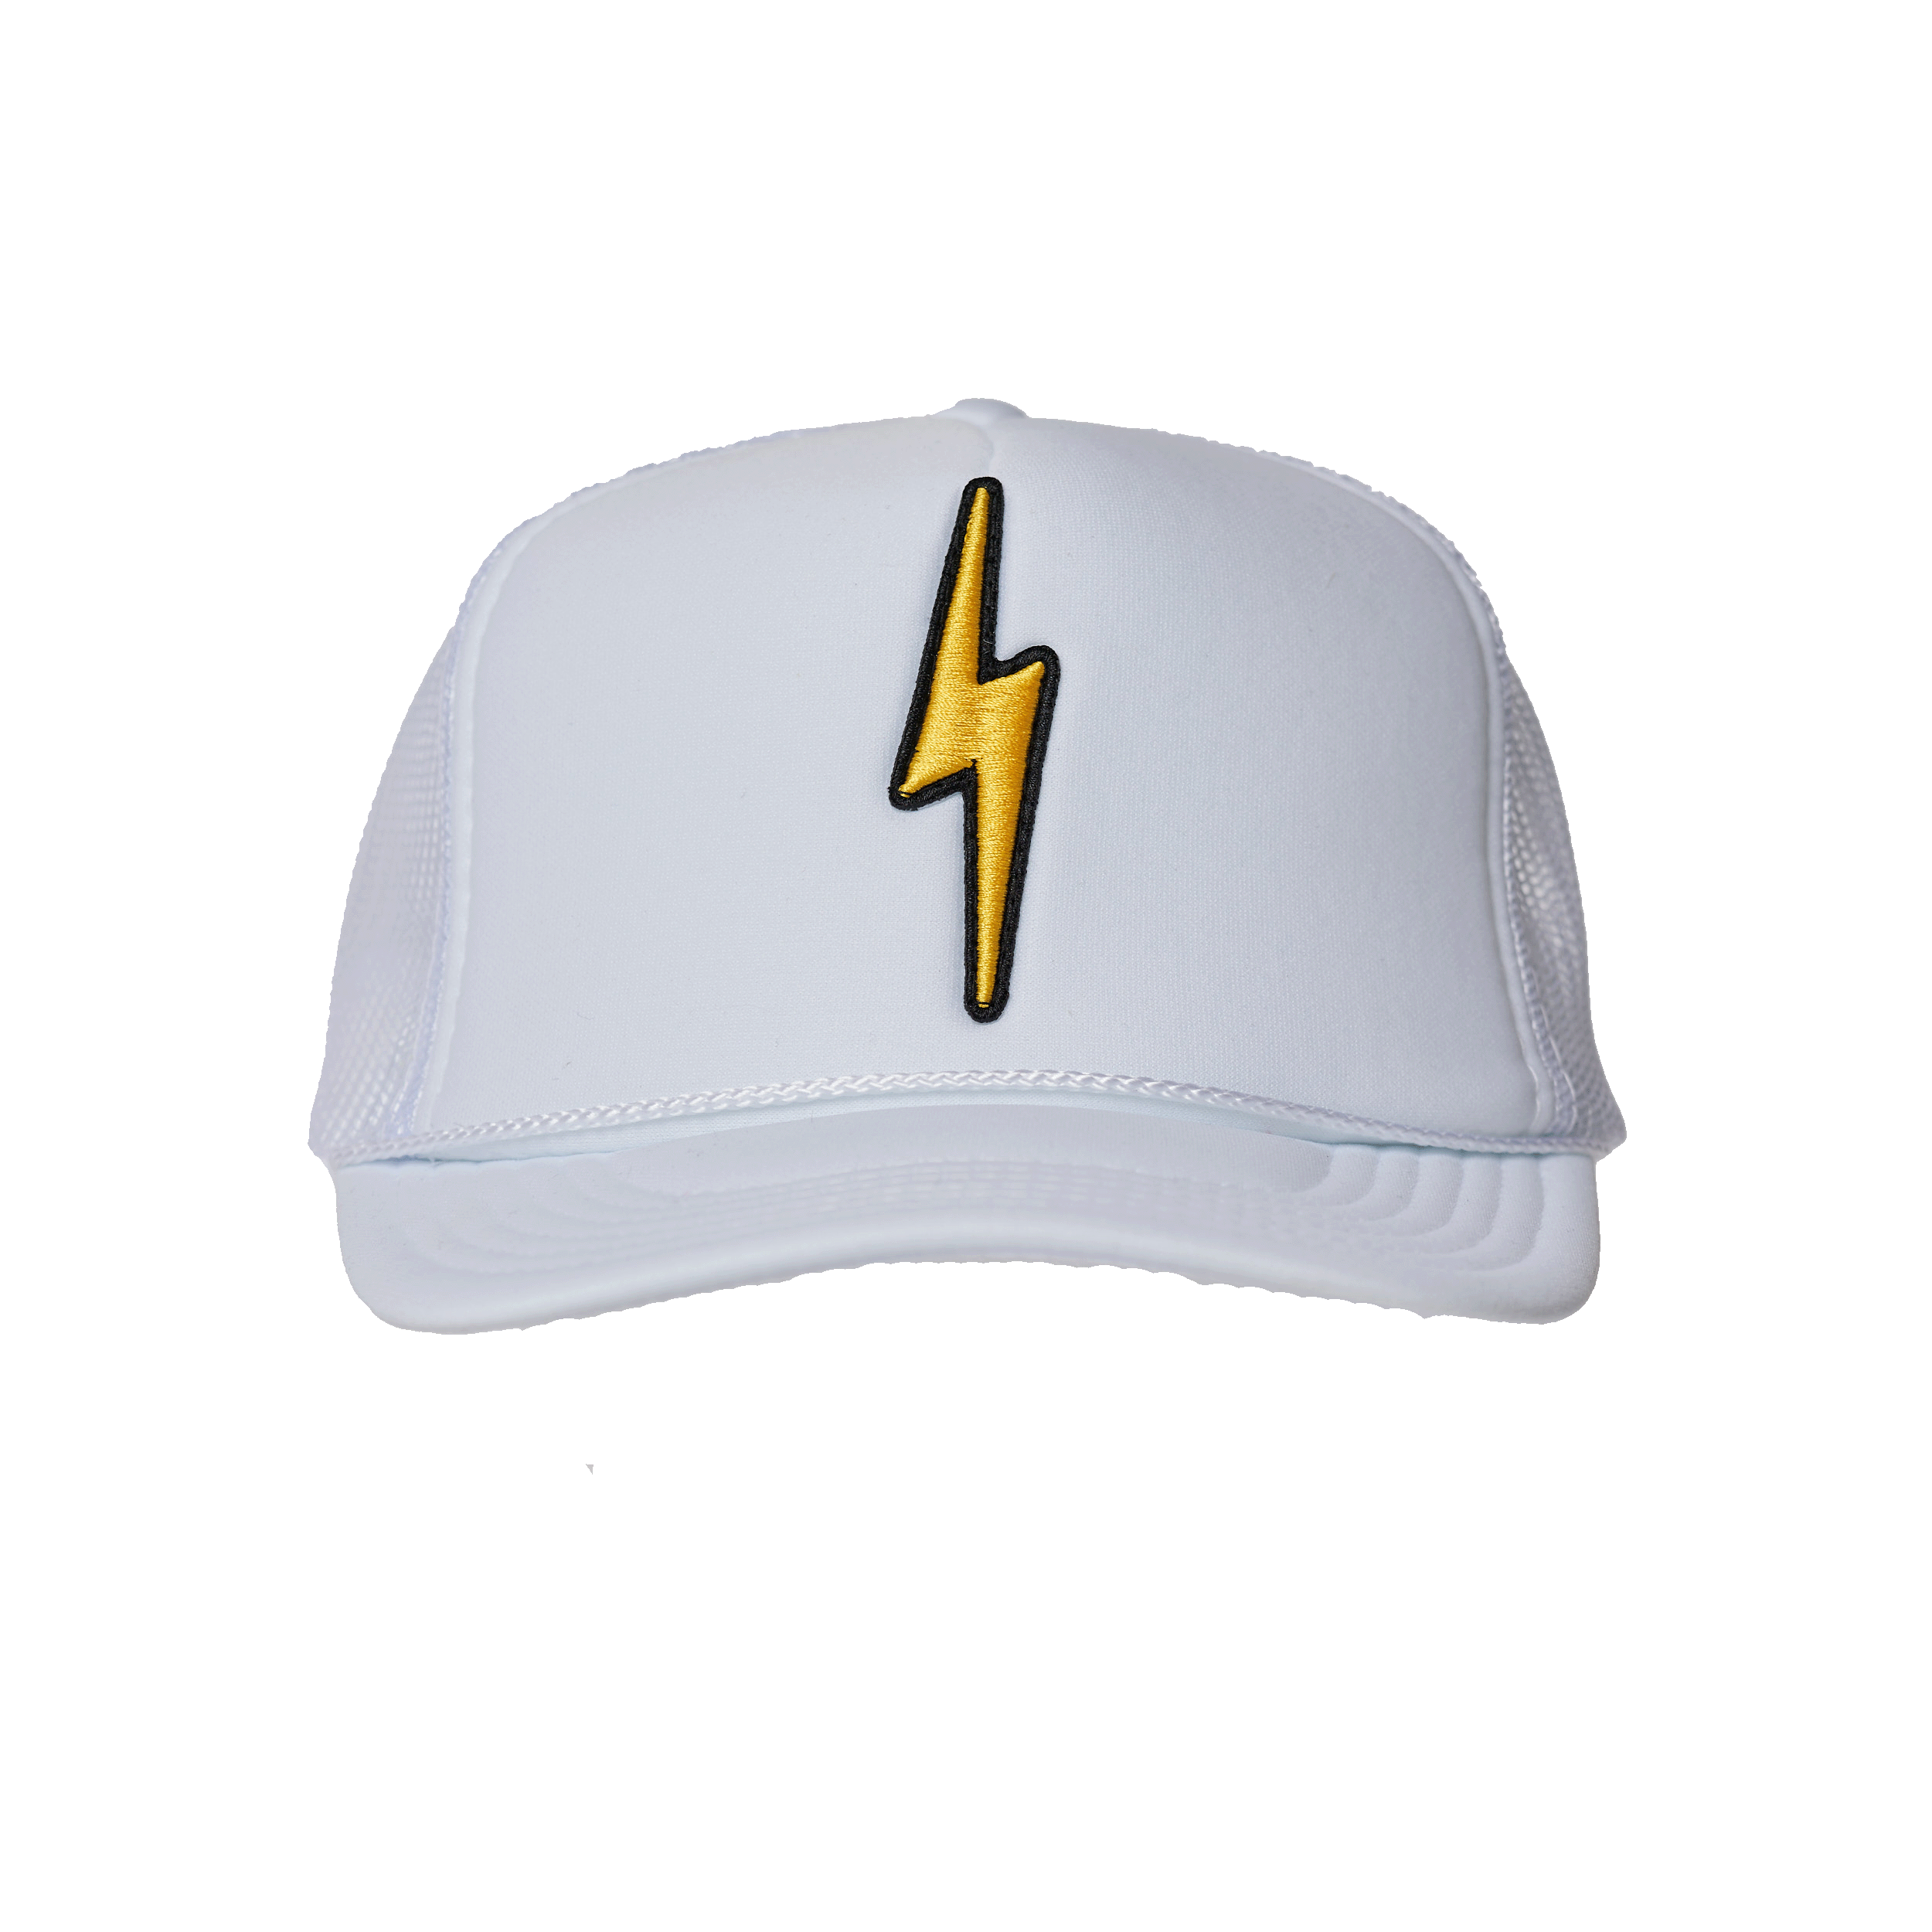 Local Beach Lightning Bolt Patch Trucker Hat